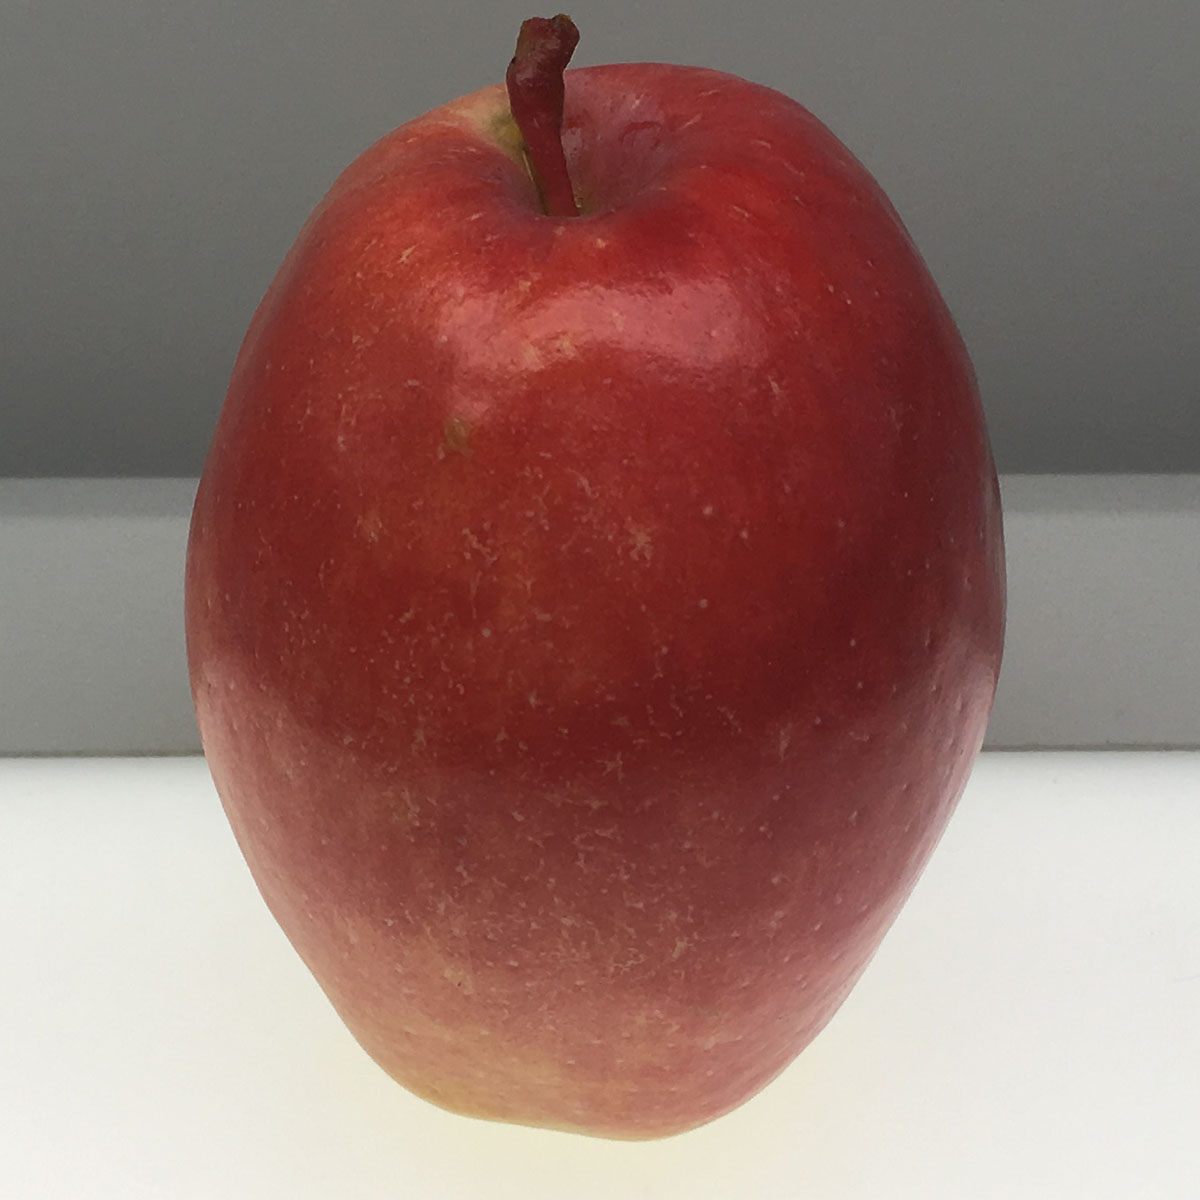 Kandil Sinap apple